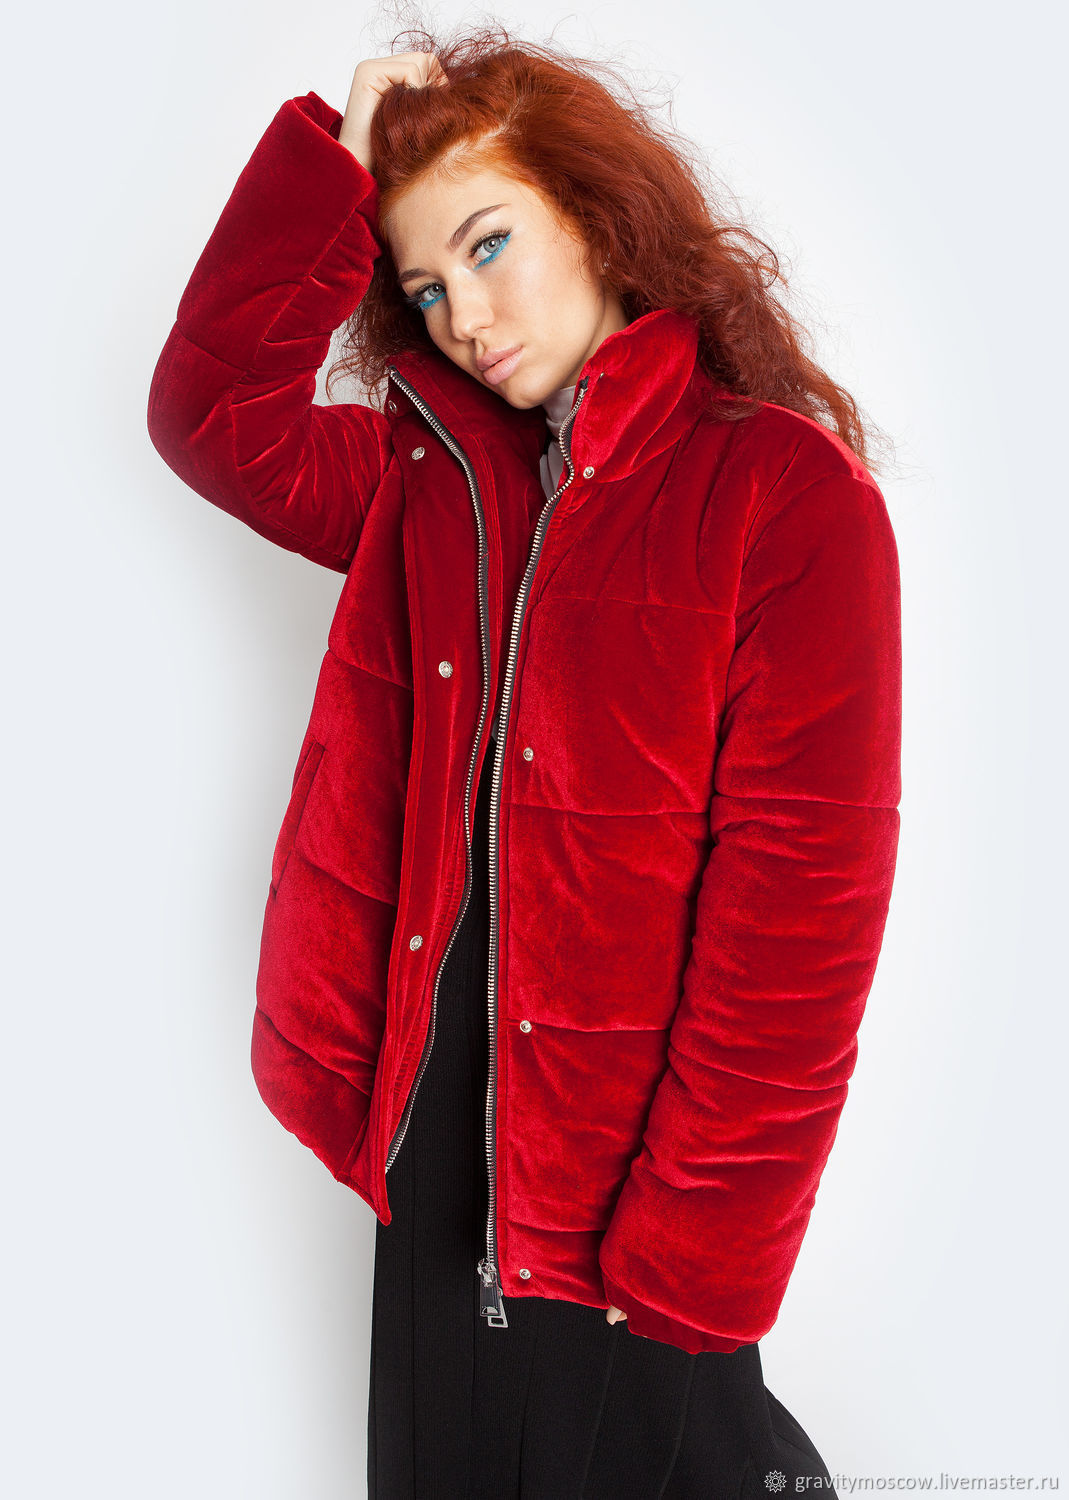 Женщина в красной куртке